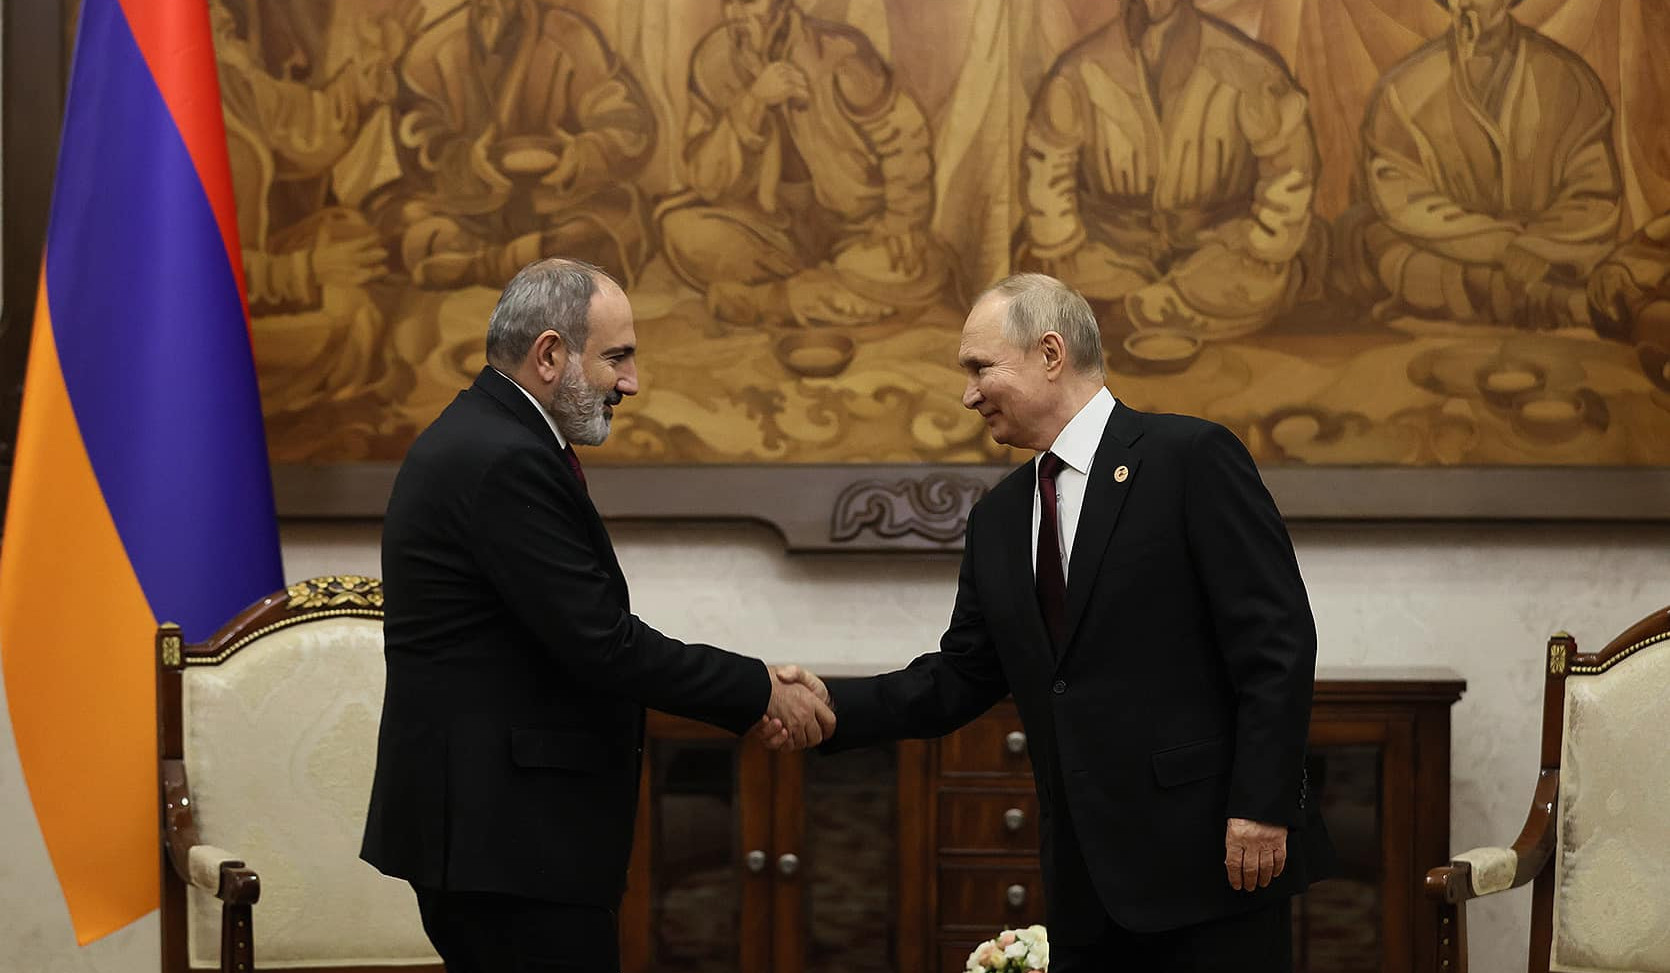 Nikol Pashinyan and Vladimir Putin met in Bishkek